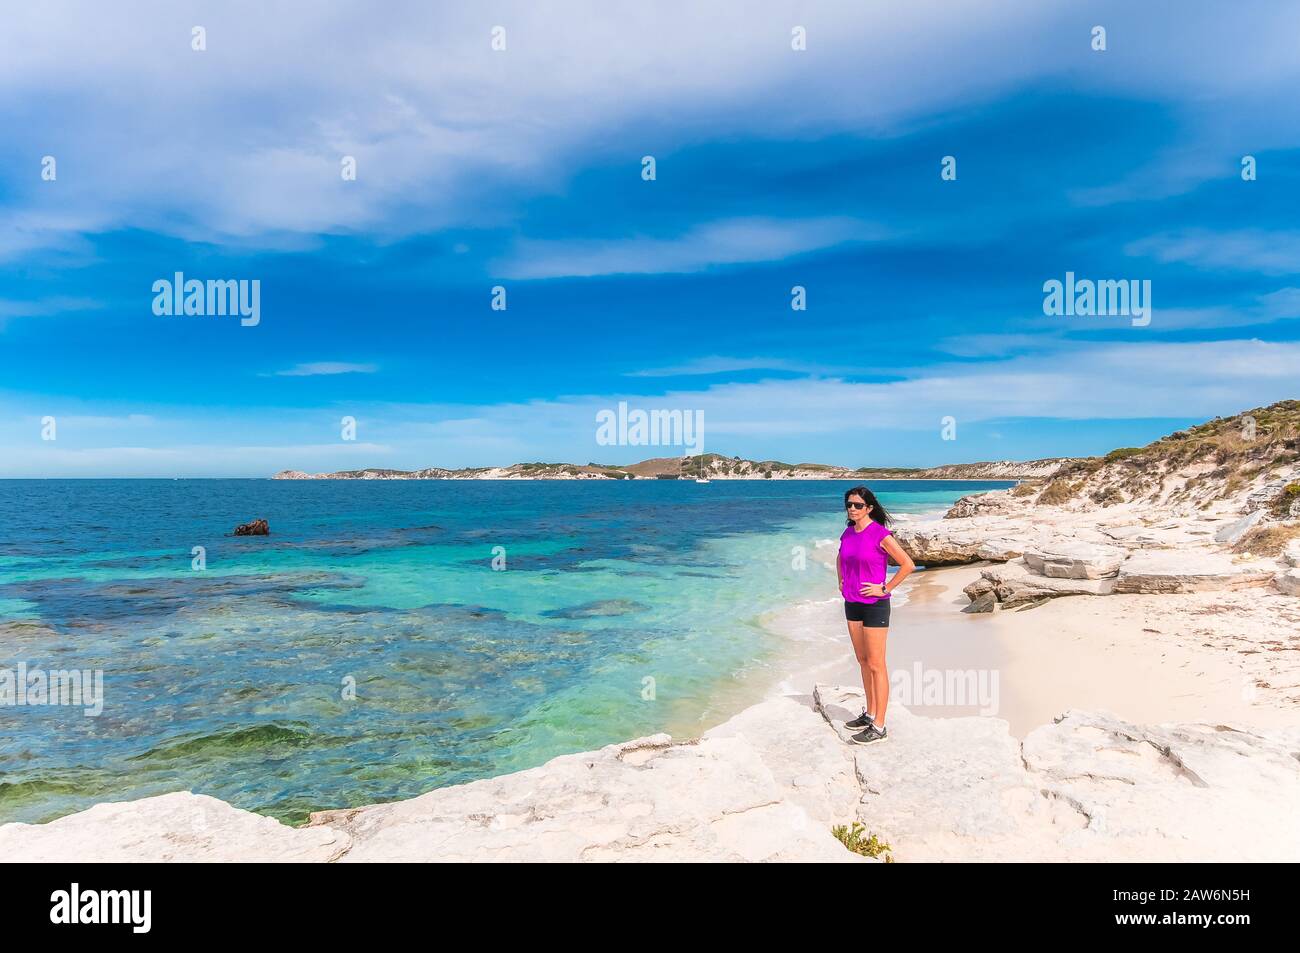 Una femmina turistica prende una pausa dal suo tour in bicicletta di rottnest Islan per ammirare le acque turchesi e la splendida spiaggia in una baia isolata. Foto Stock